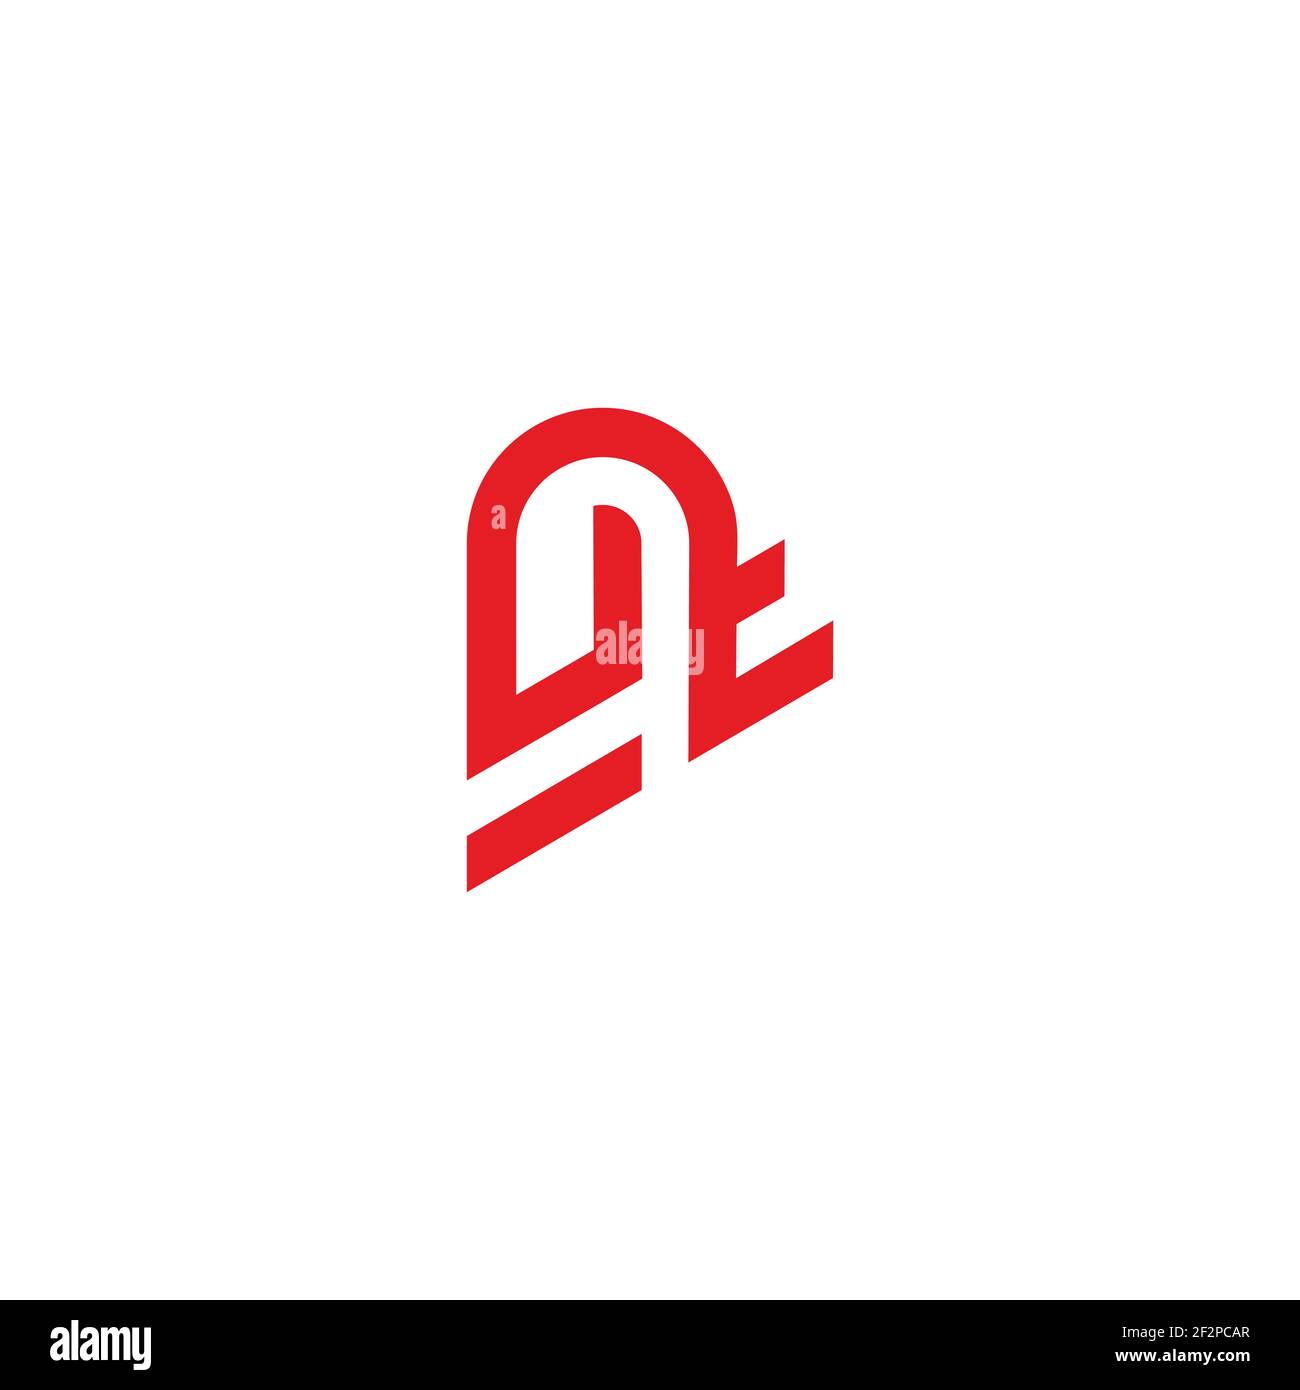 letter ut line art geometric design logo vector Stock Vector Image ...